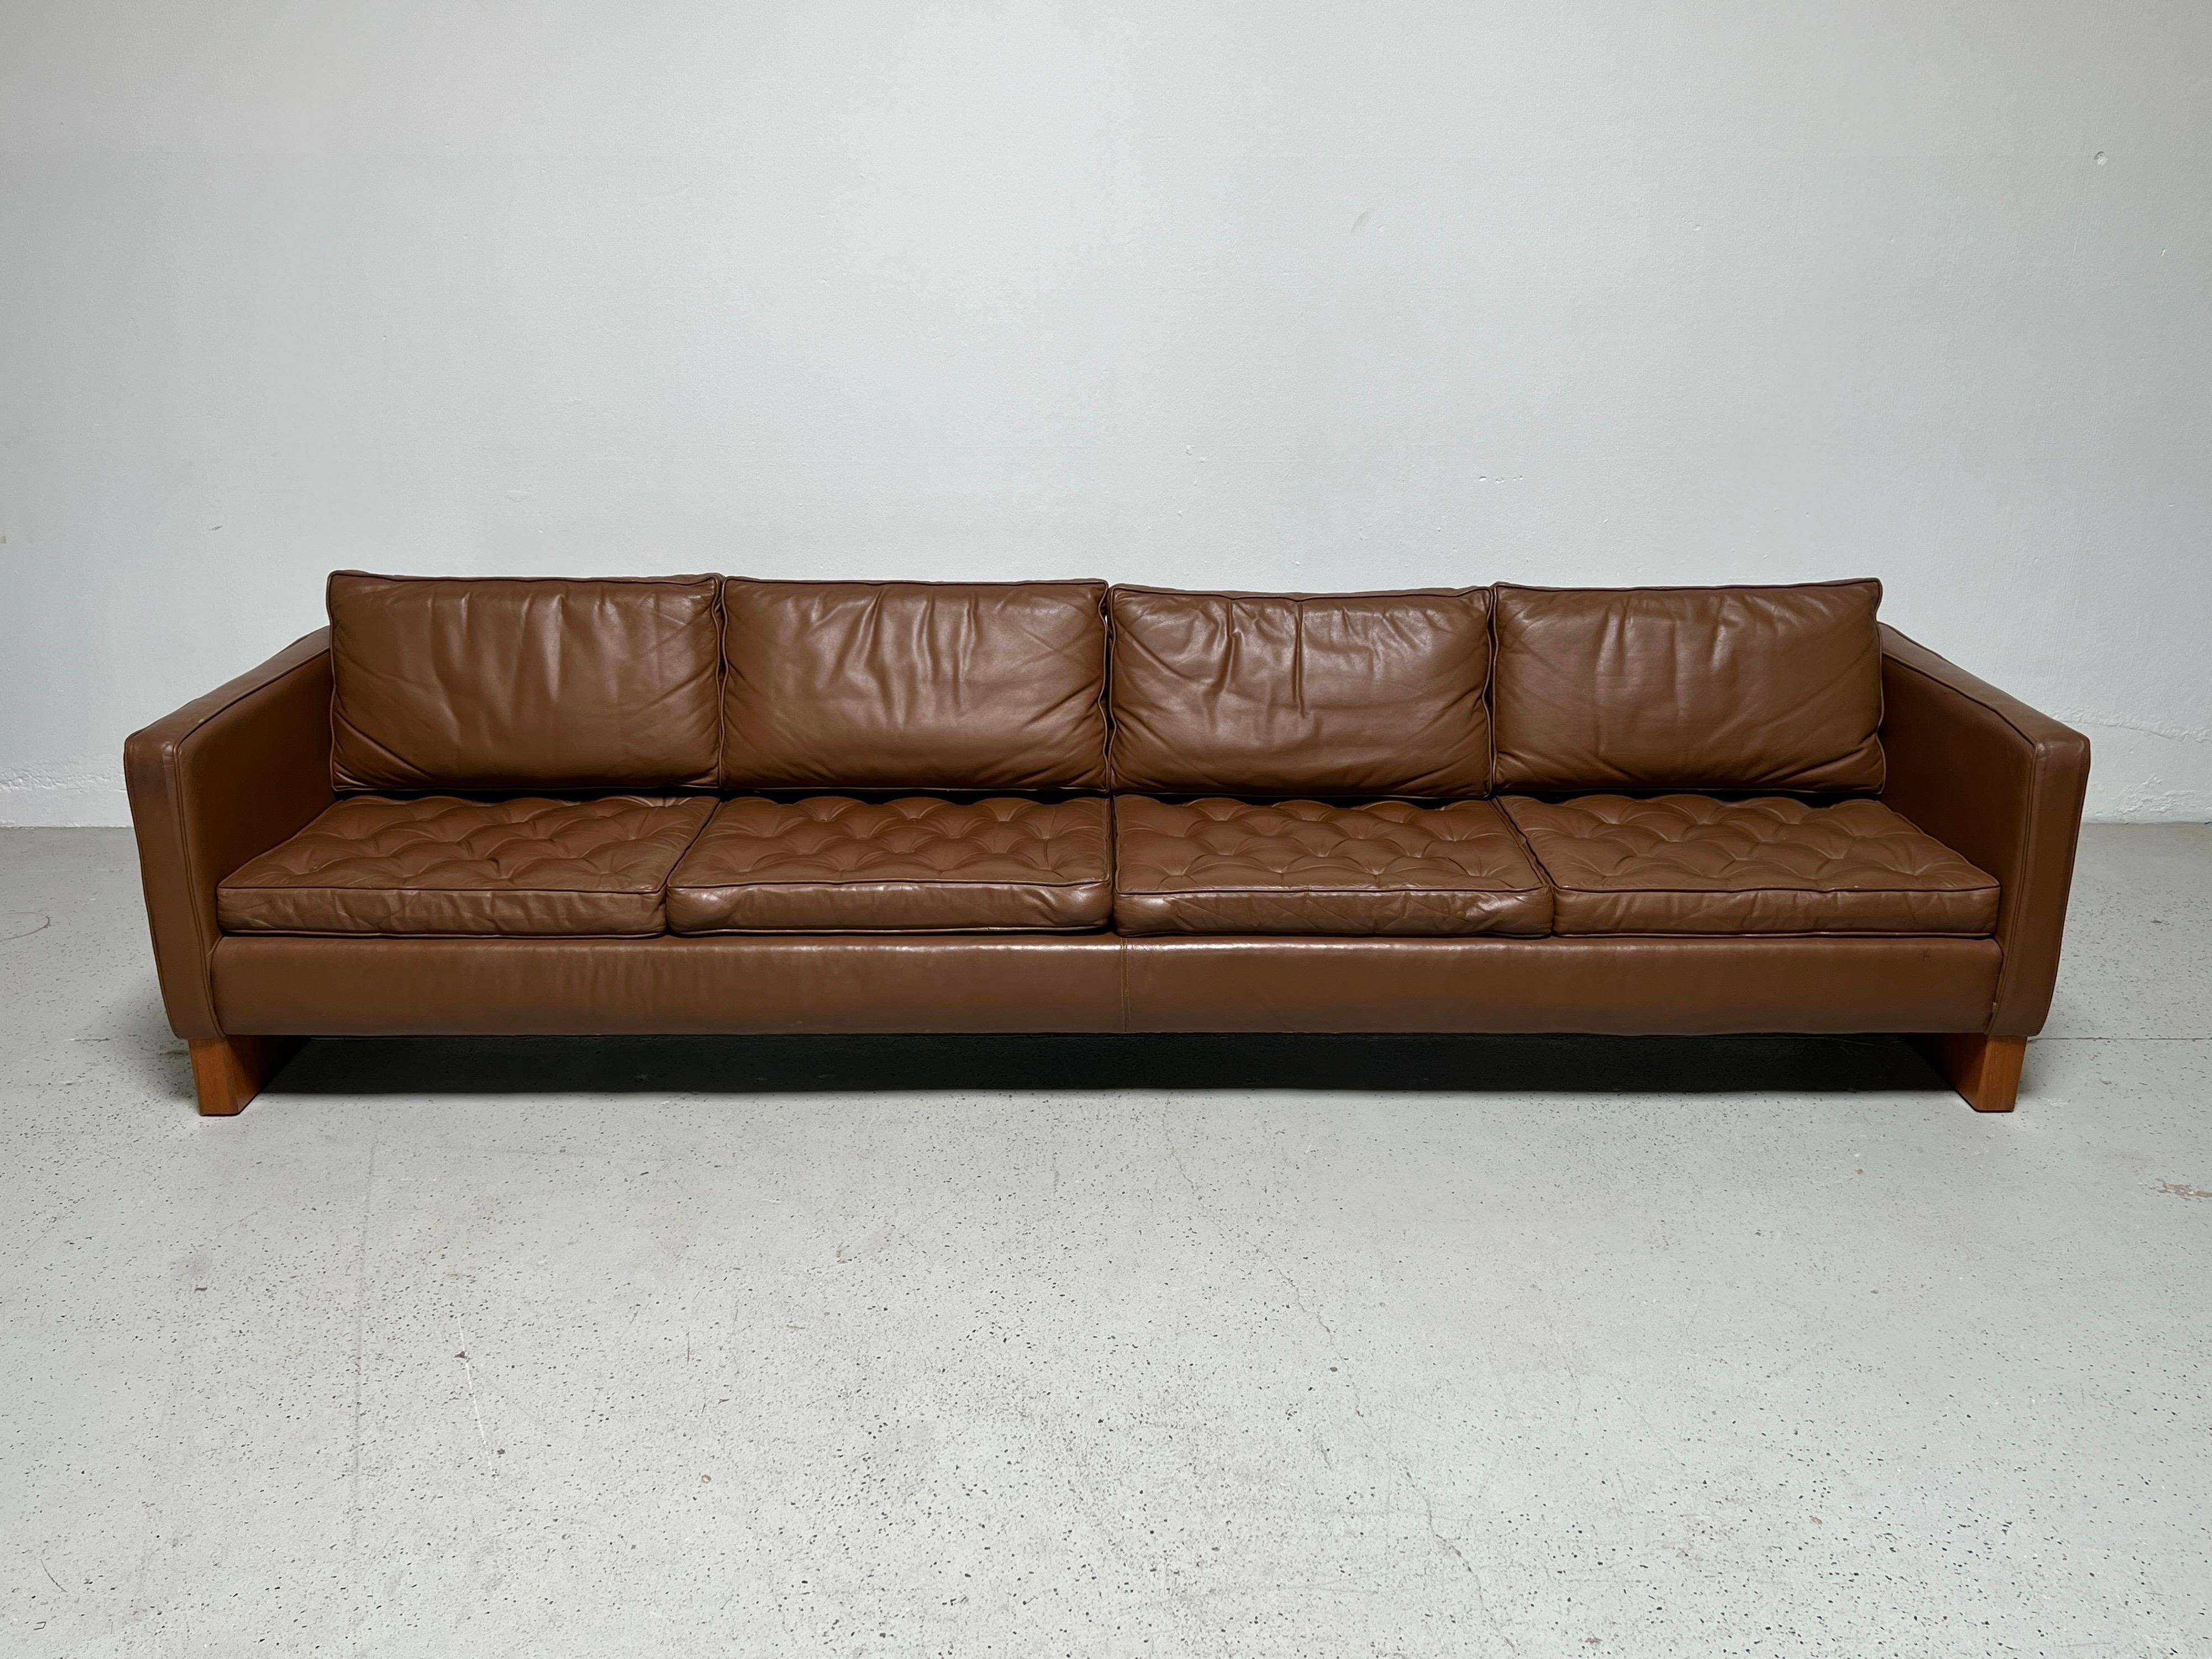 Grand canapé à quatre places conçu par Mies van den Rohe pour Knoll. Un design rare fabriqué en production limitée. Cette version est dotée de patins en chêne et d'un revêtement en cuir plus récent.